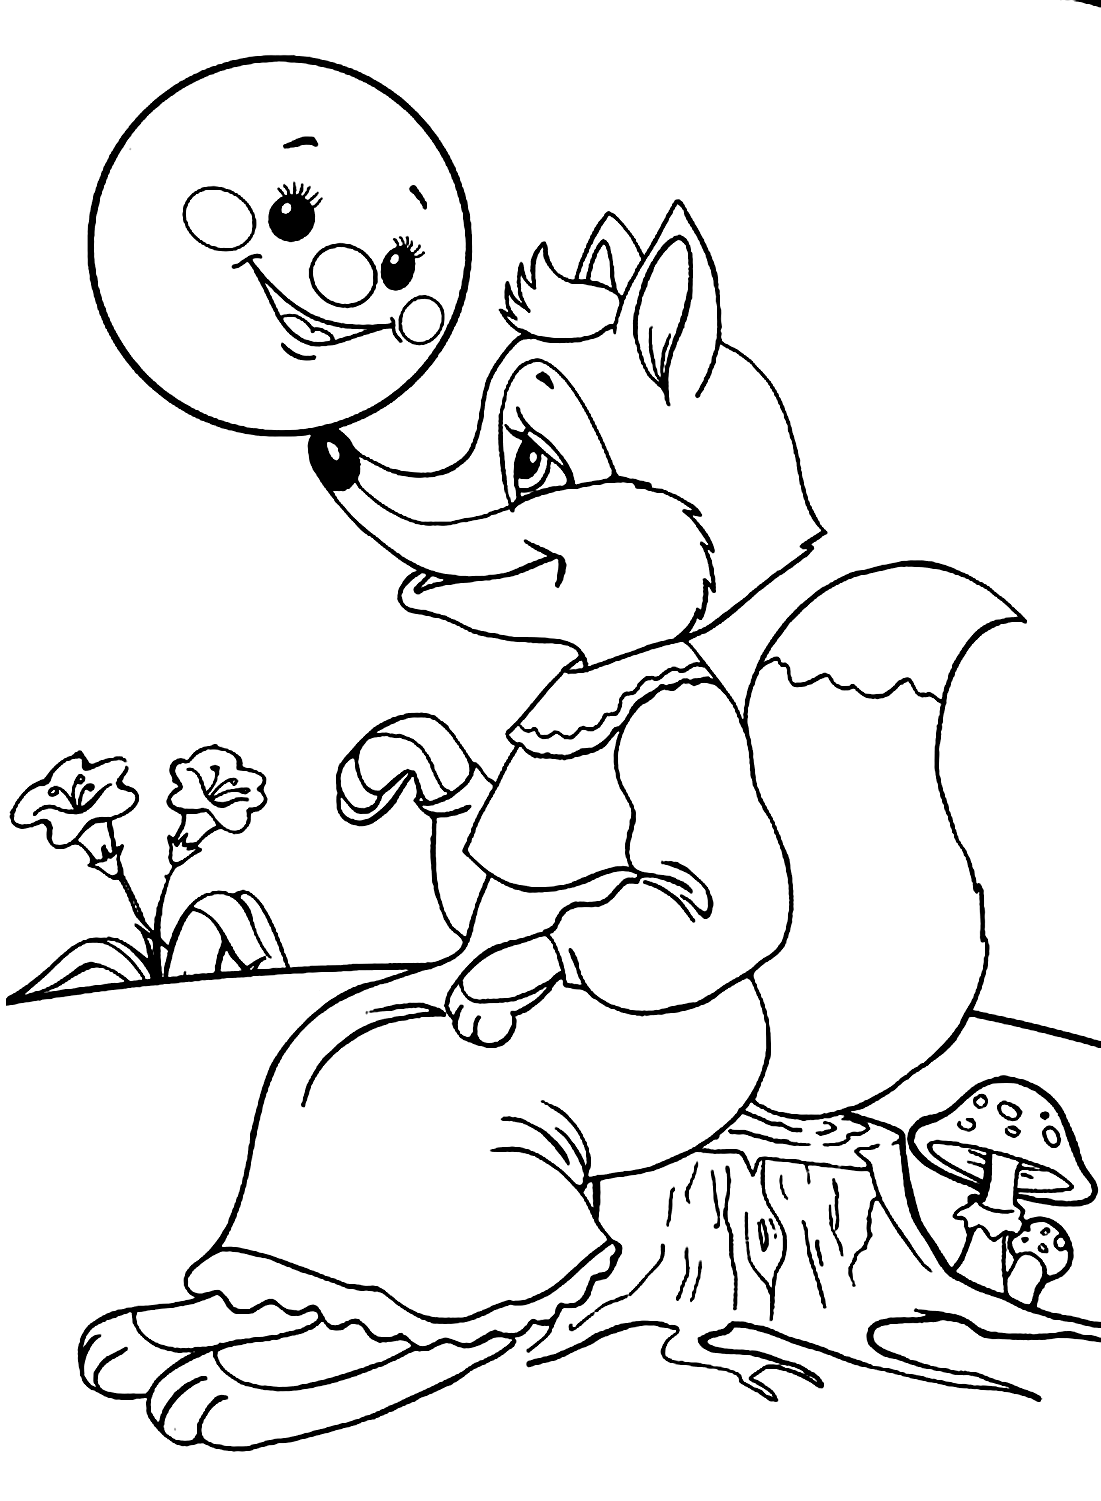 Der Fuchs sitzt auf einem Holzbild von Fox